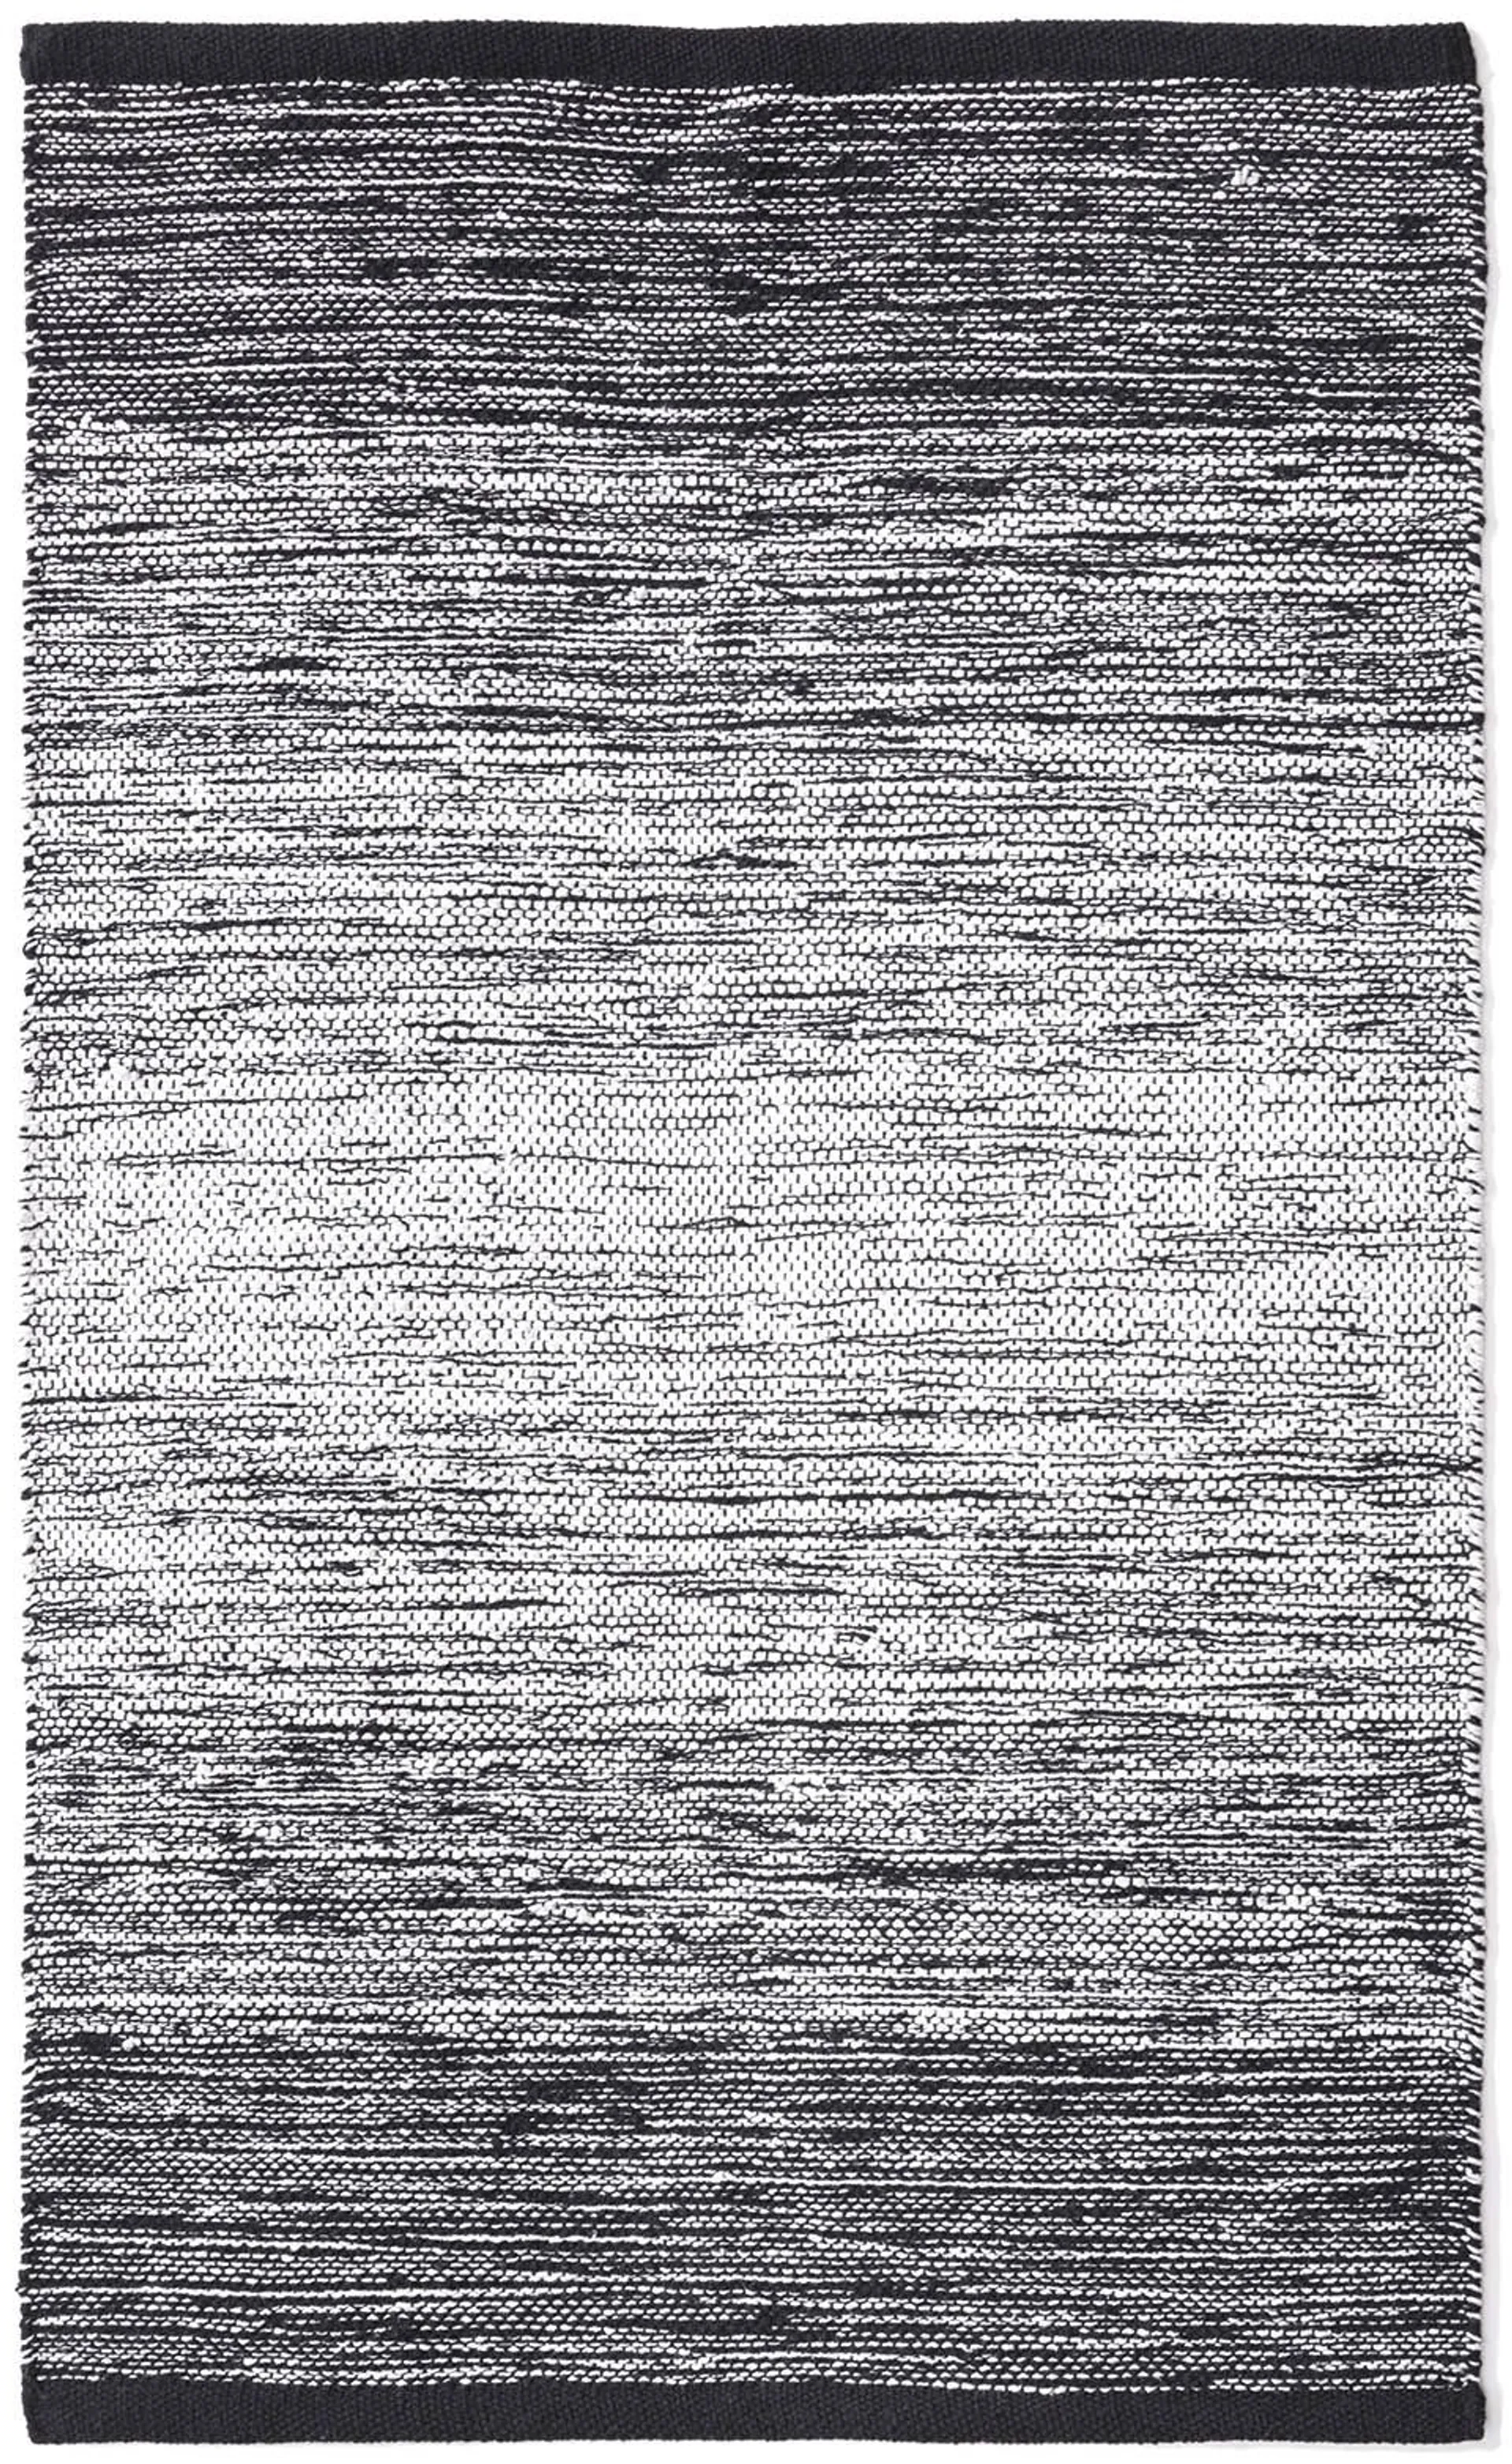 Dywanik dekoracyjny Gradation 60x90 cm czarny/biały